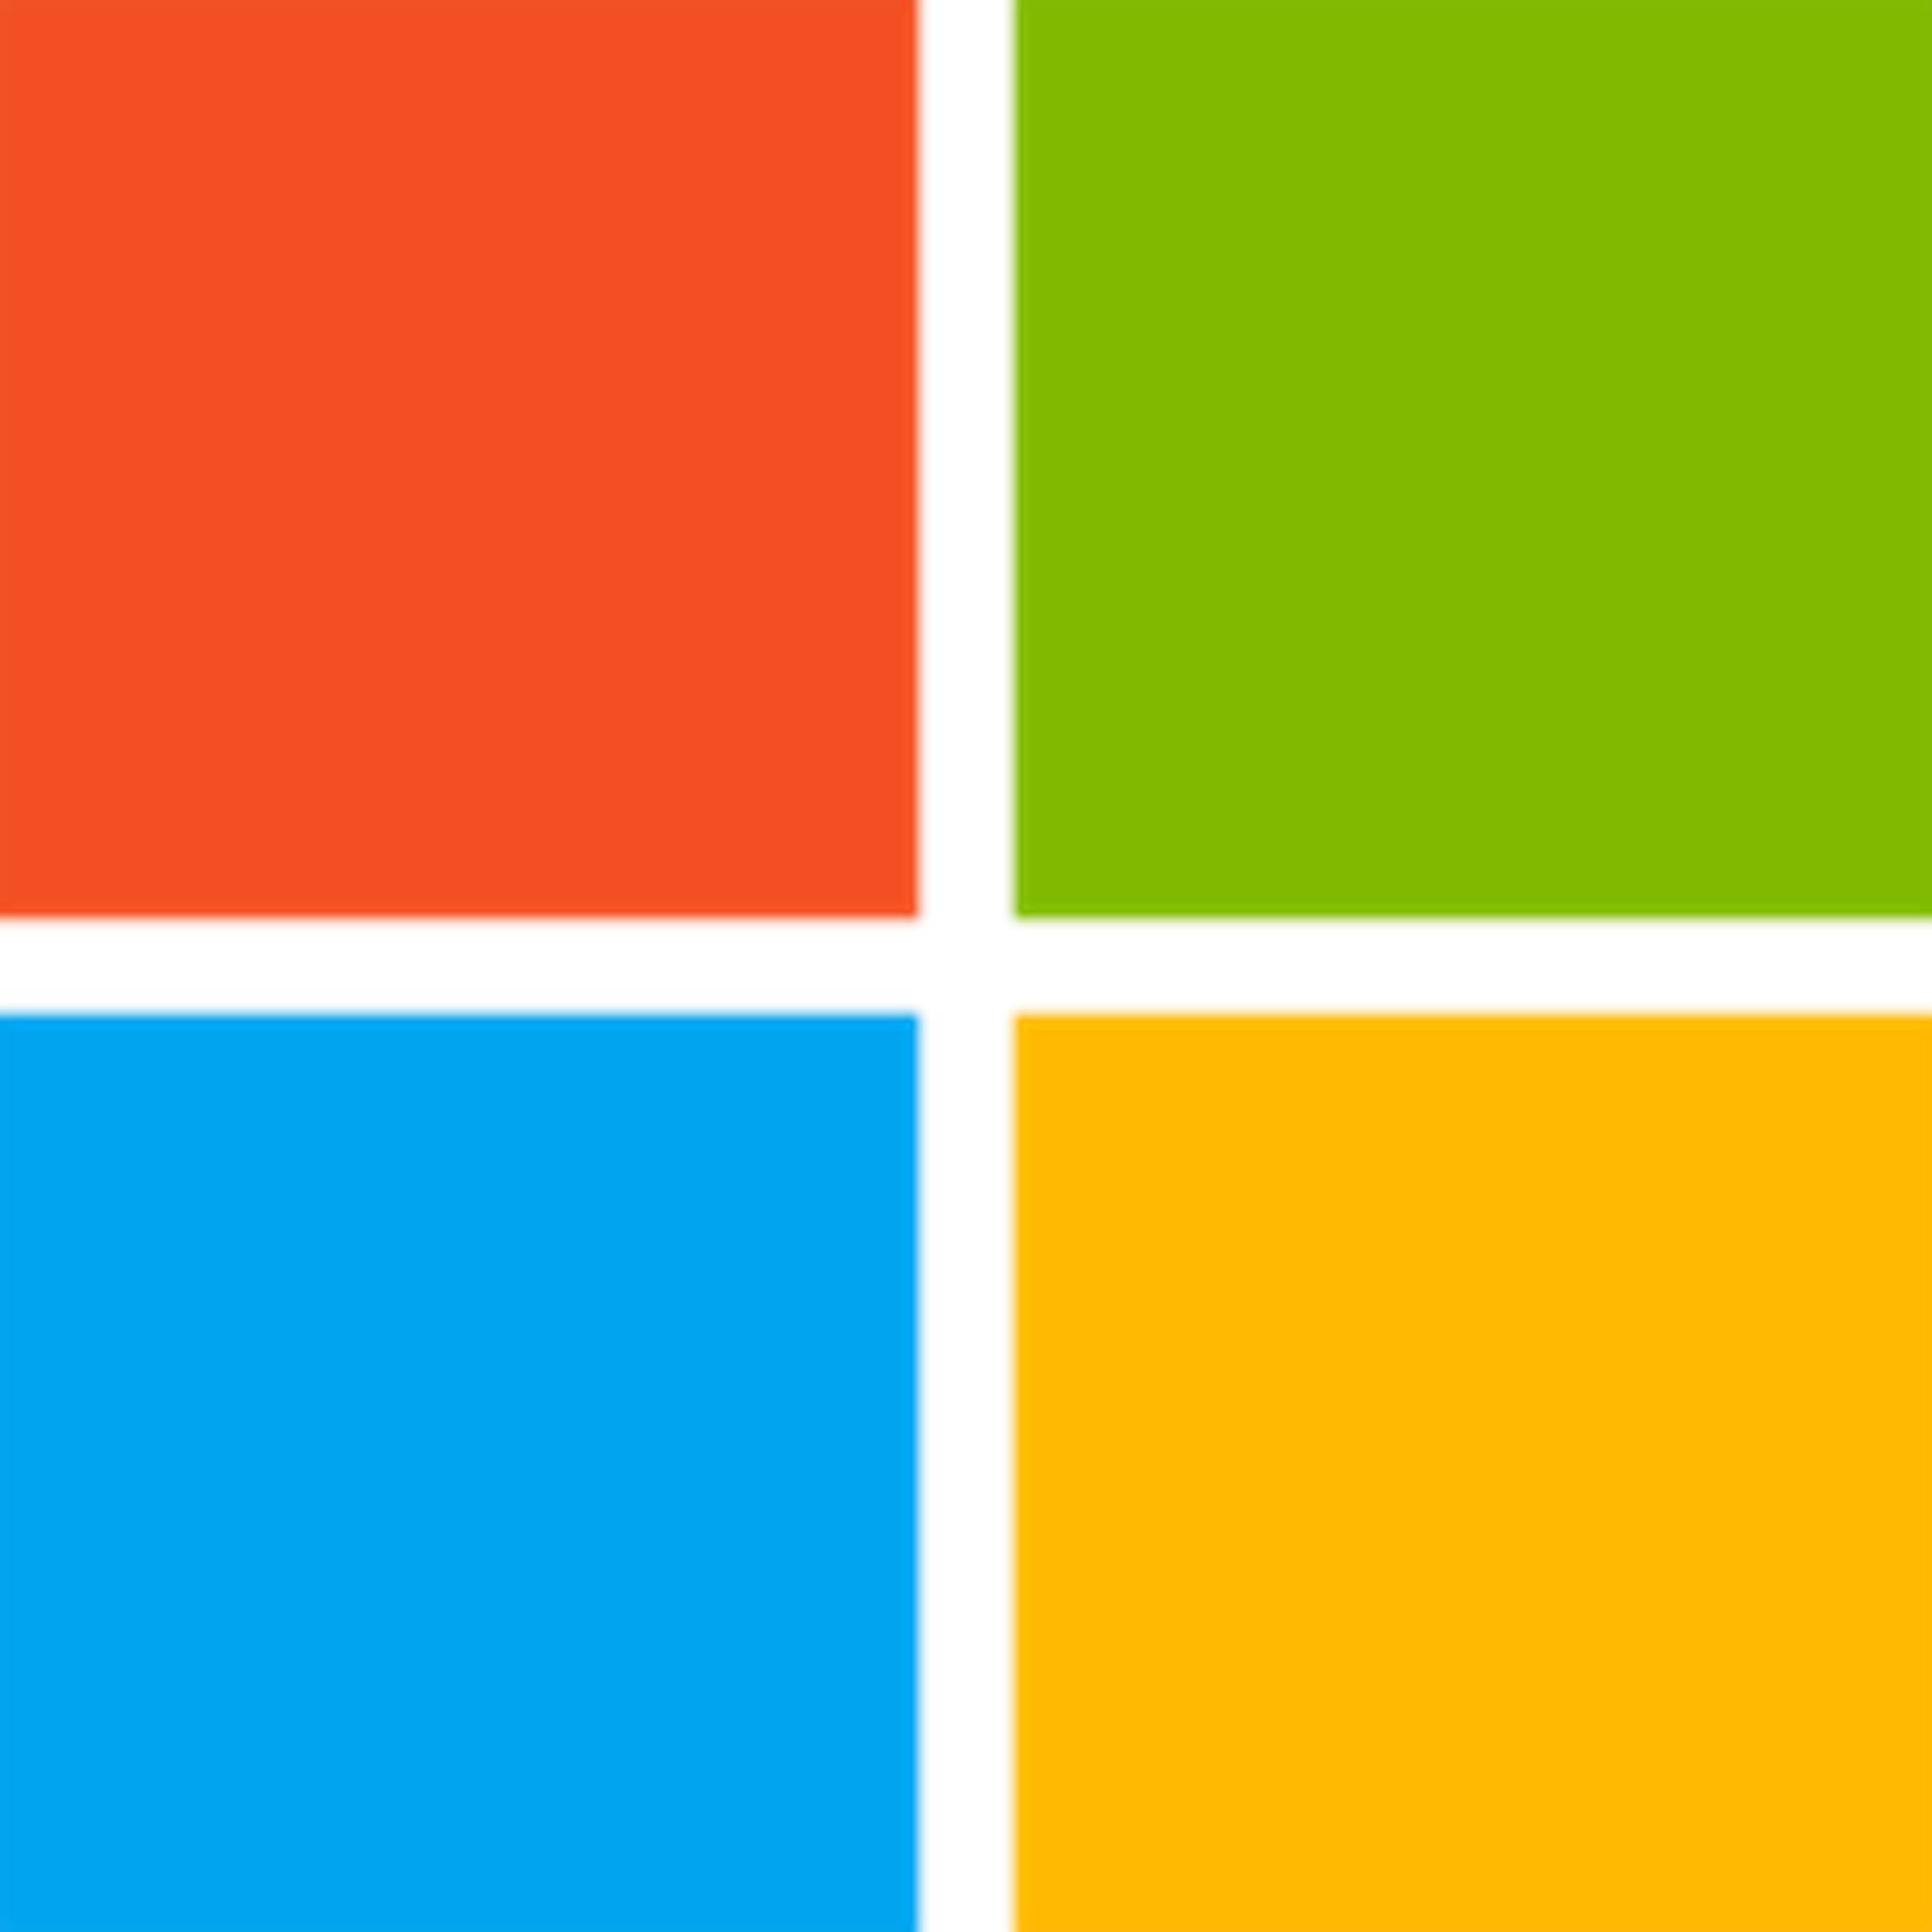 Microsoft Inclusive Design